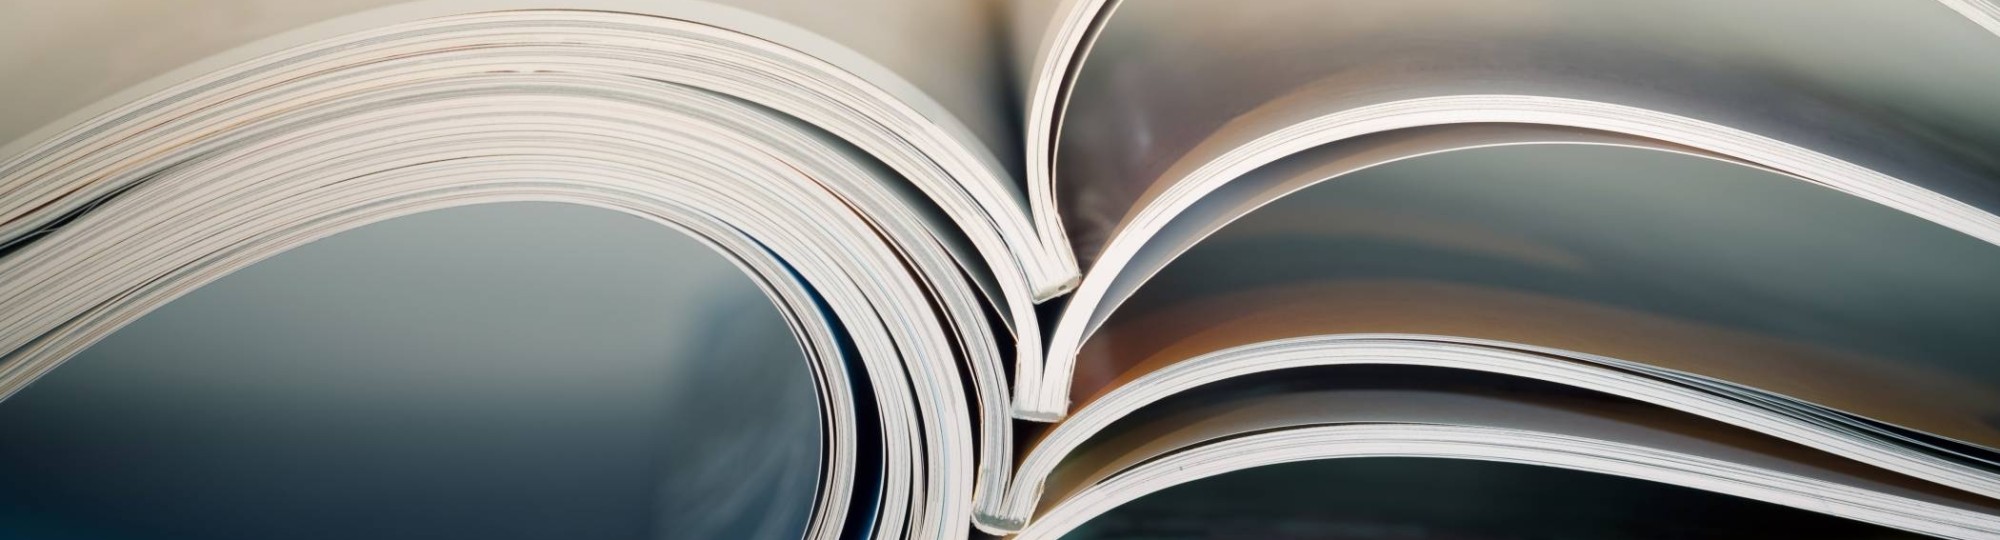 Stockfoto van opengeslagen boek met wazige achtergrond, mooi gebogen vormen